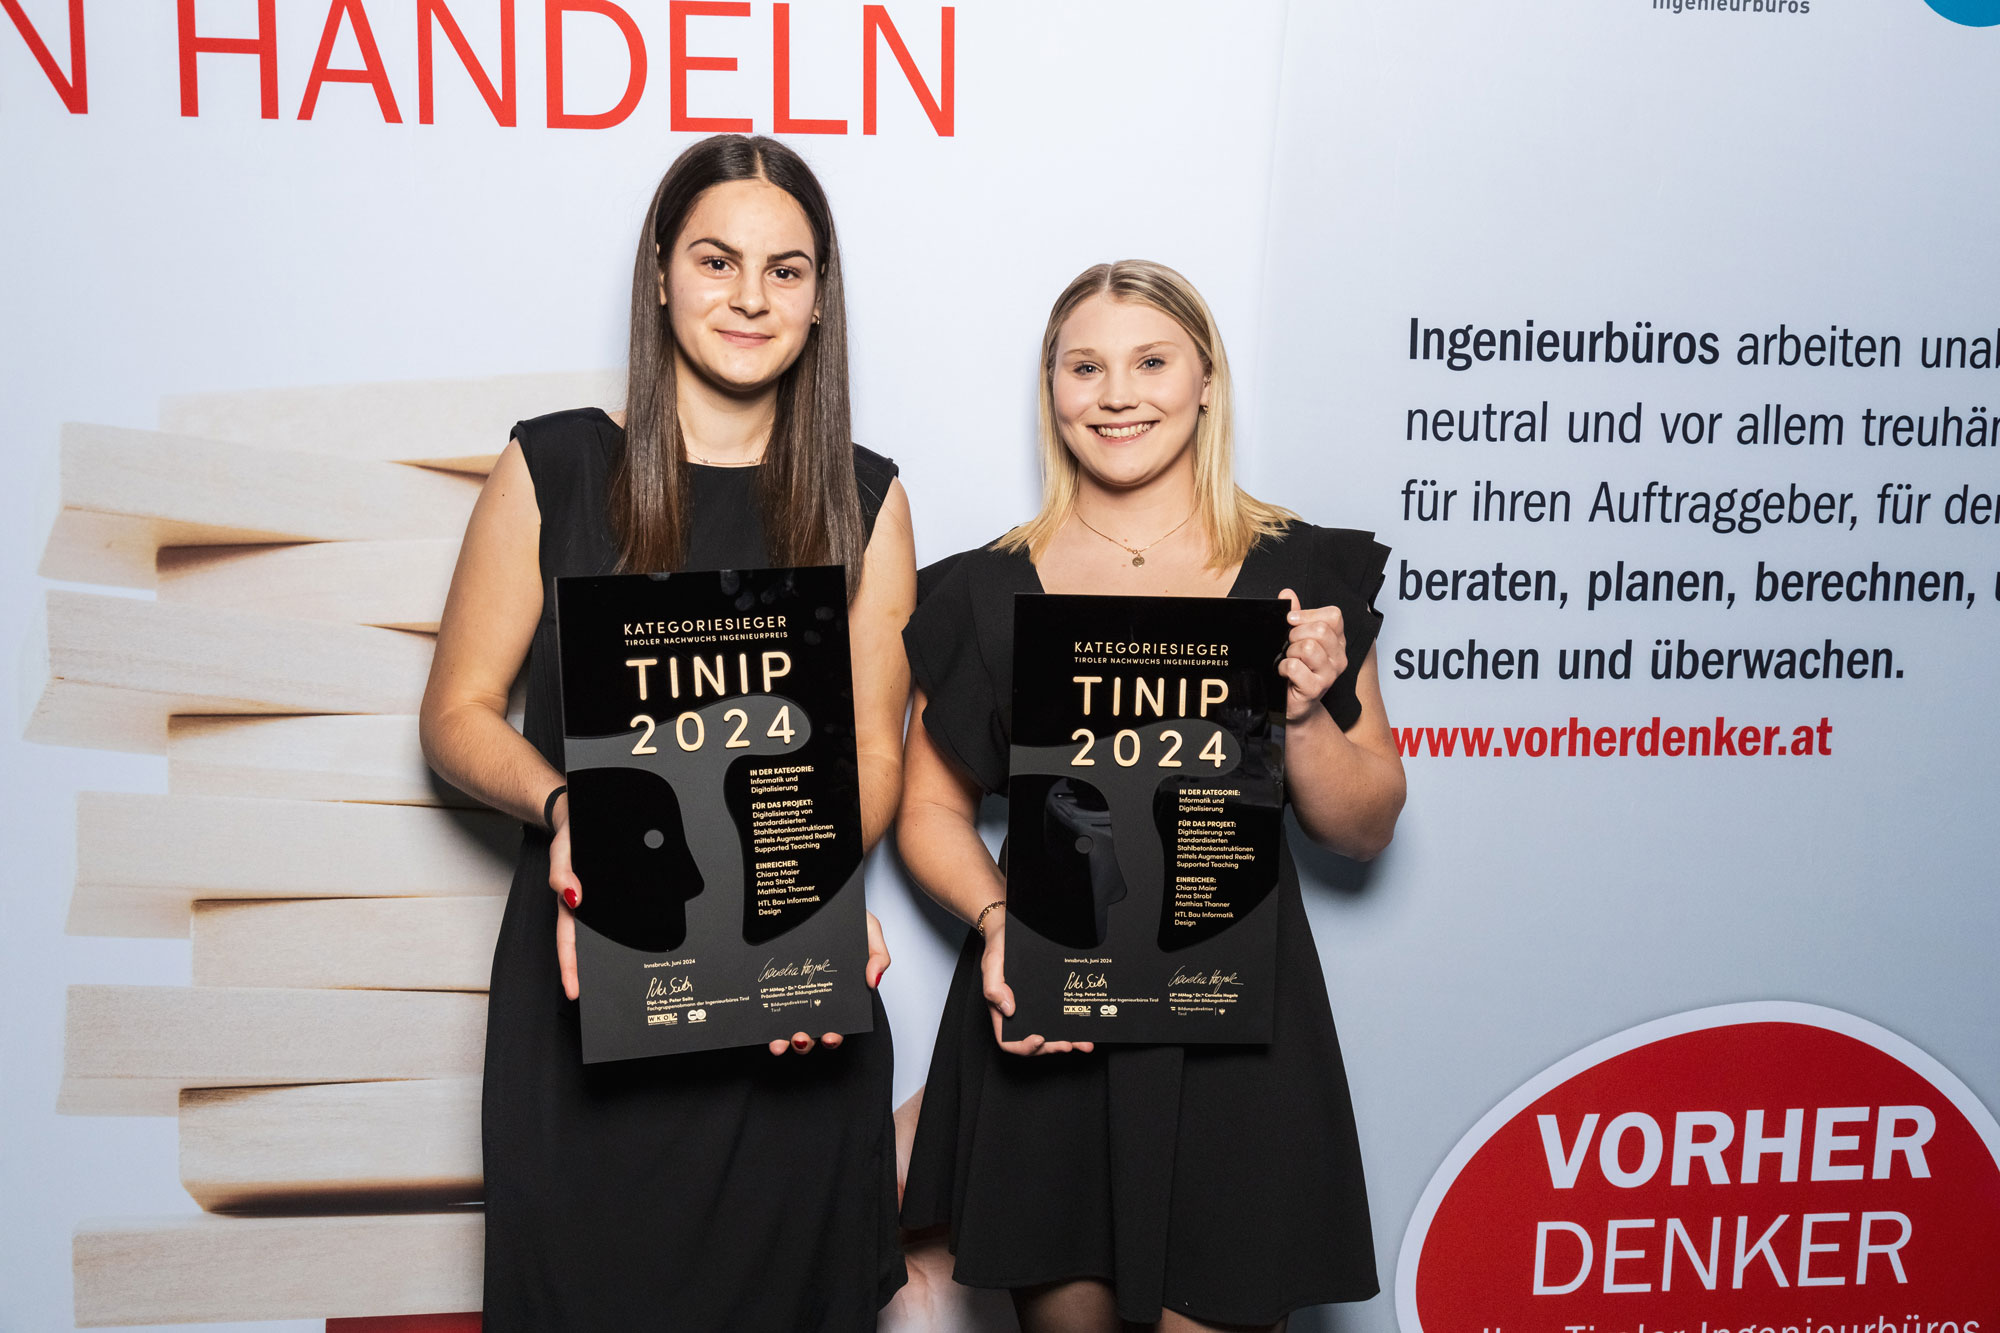 TINIP 2024 - Kategoriesieger "Informatik und Digitalisierung": Chiara Maier und Anna Strobl (r.) von der HTBLVA Trenkwalderstraße in Innsbruck.